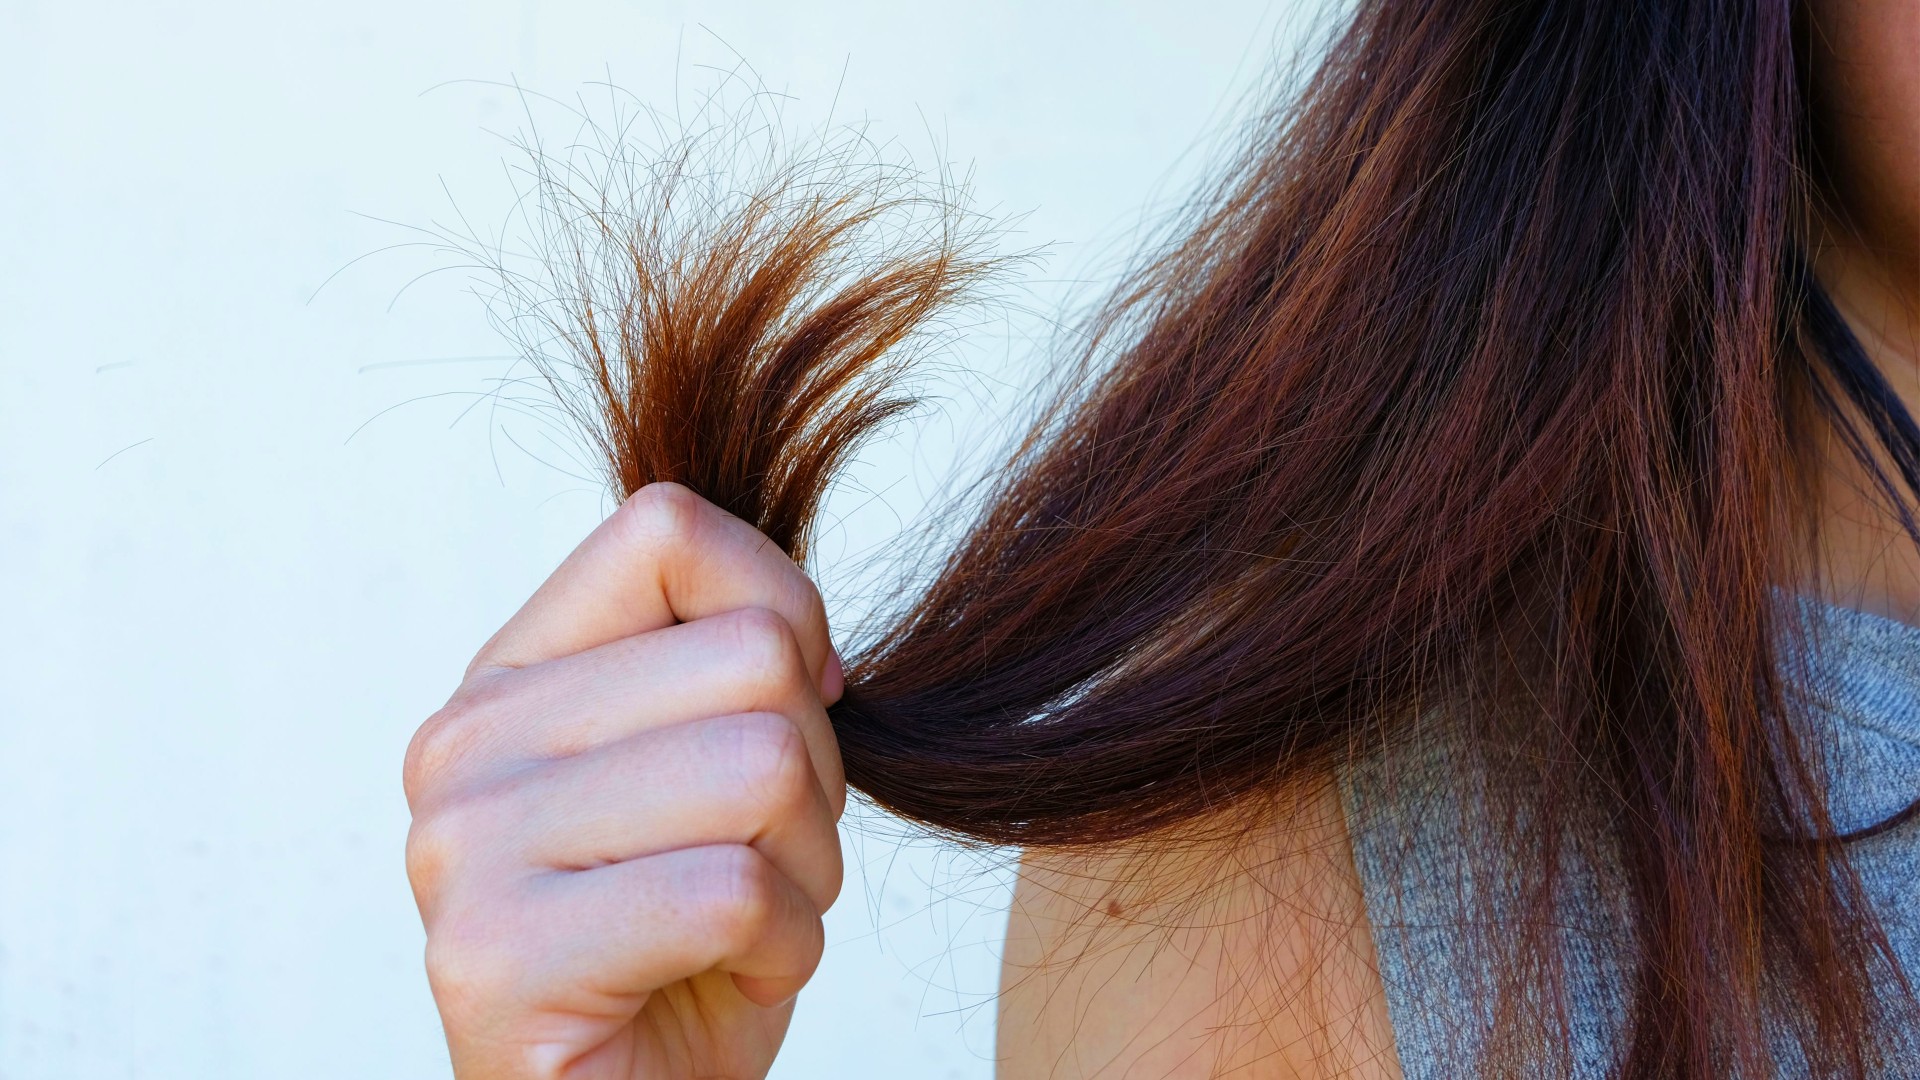 Foto de capa do artigo "Bepantol para cabelo: entenda como usar e os benefícios"